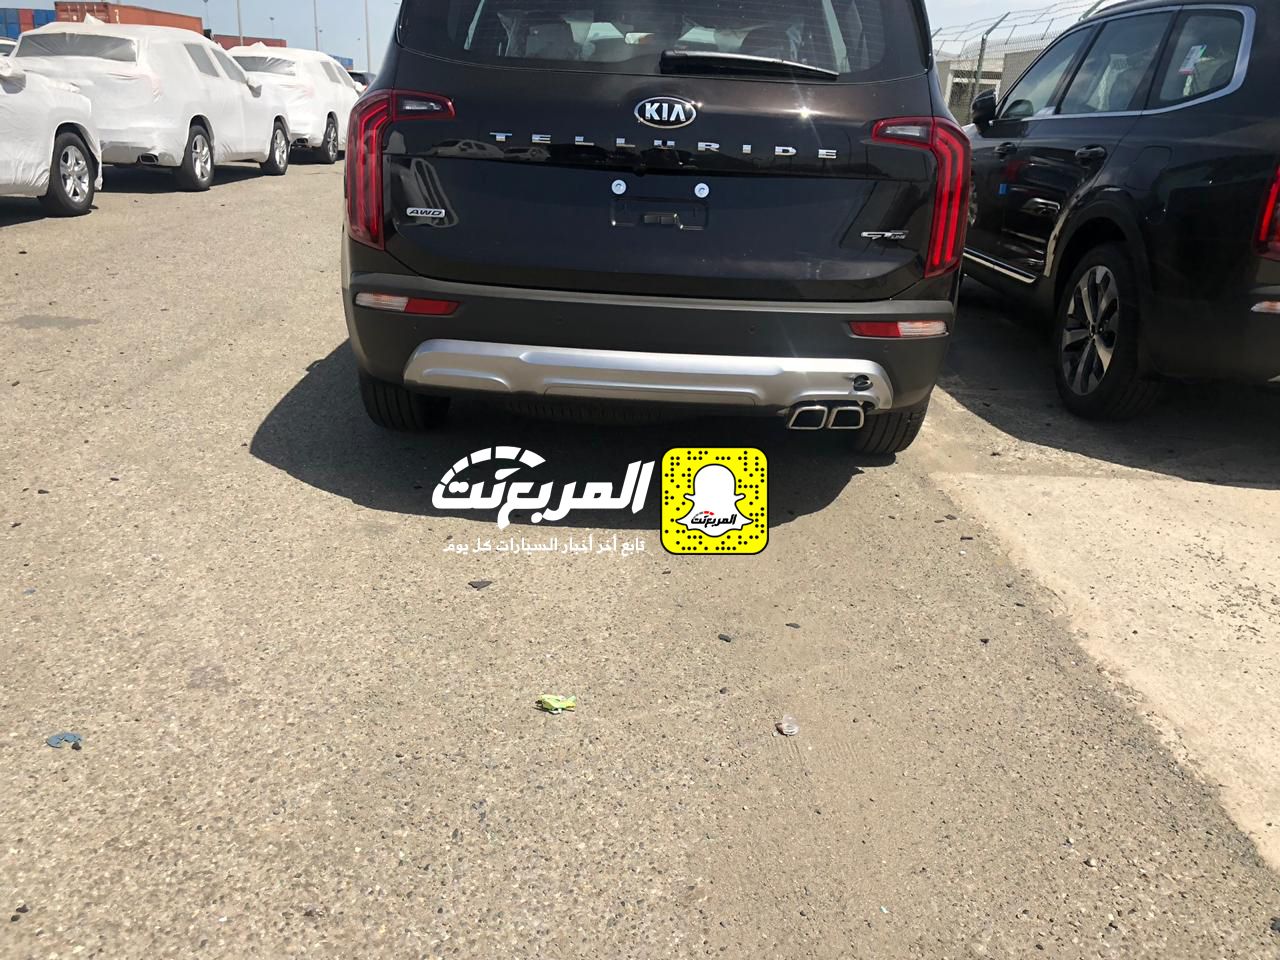 "بالصور" وصول كيا تيلورايد 2020 الجديدة الى السعودية اكبر SUV من كيا + موعد البيع الرسمي 24